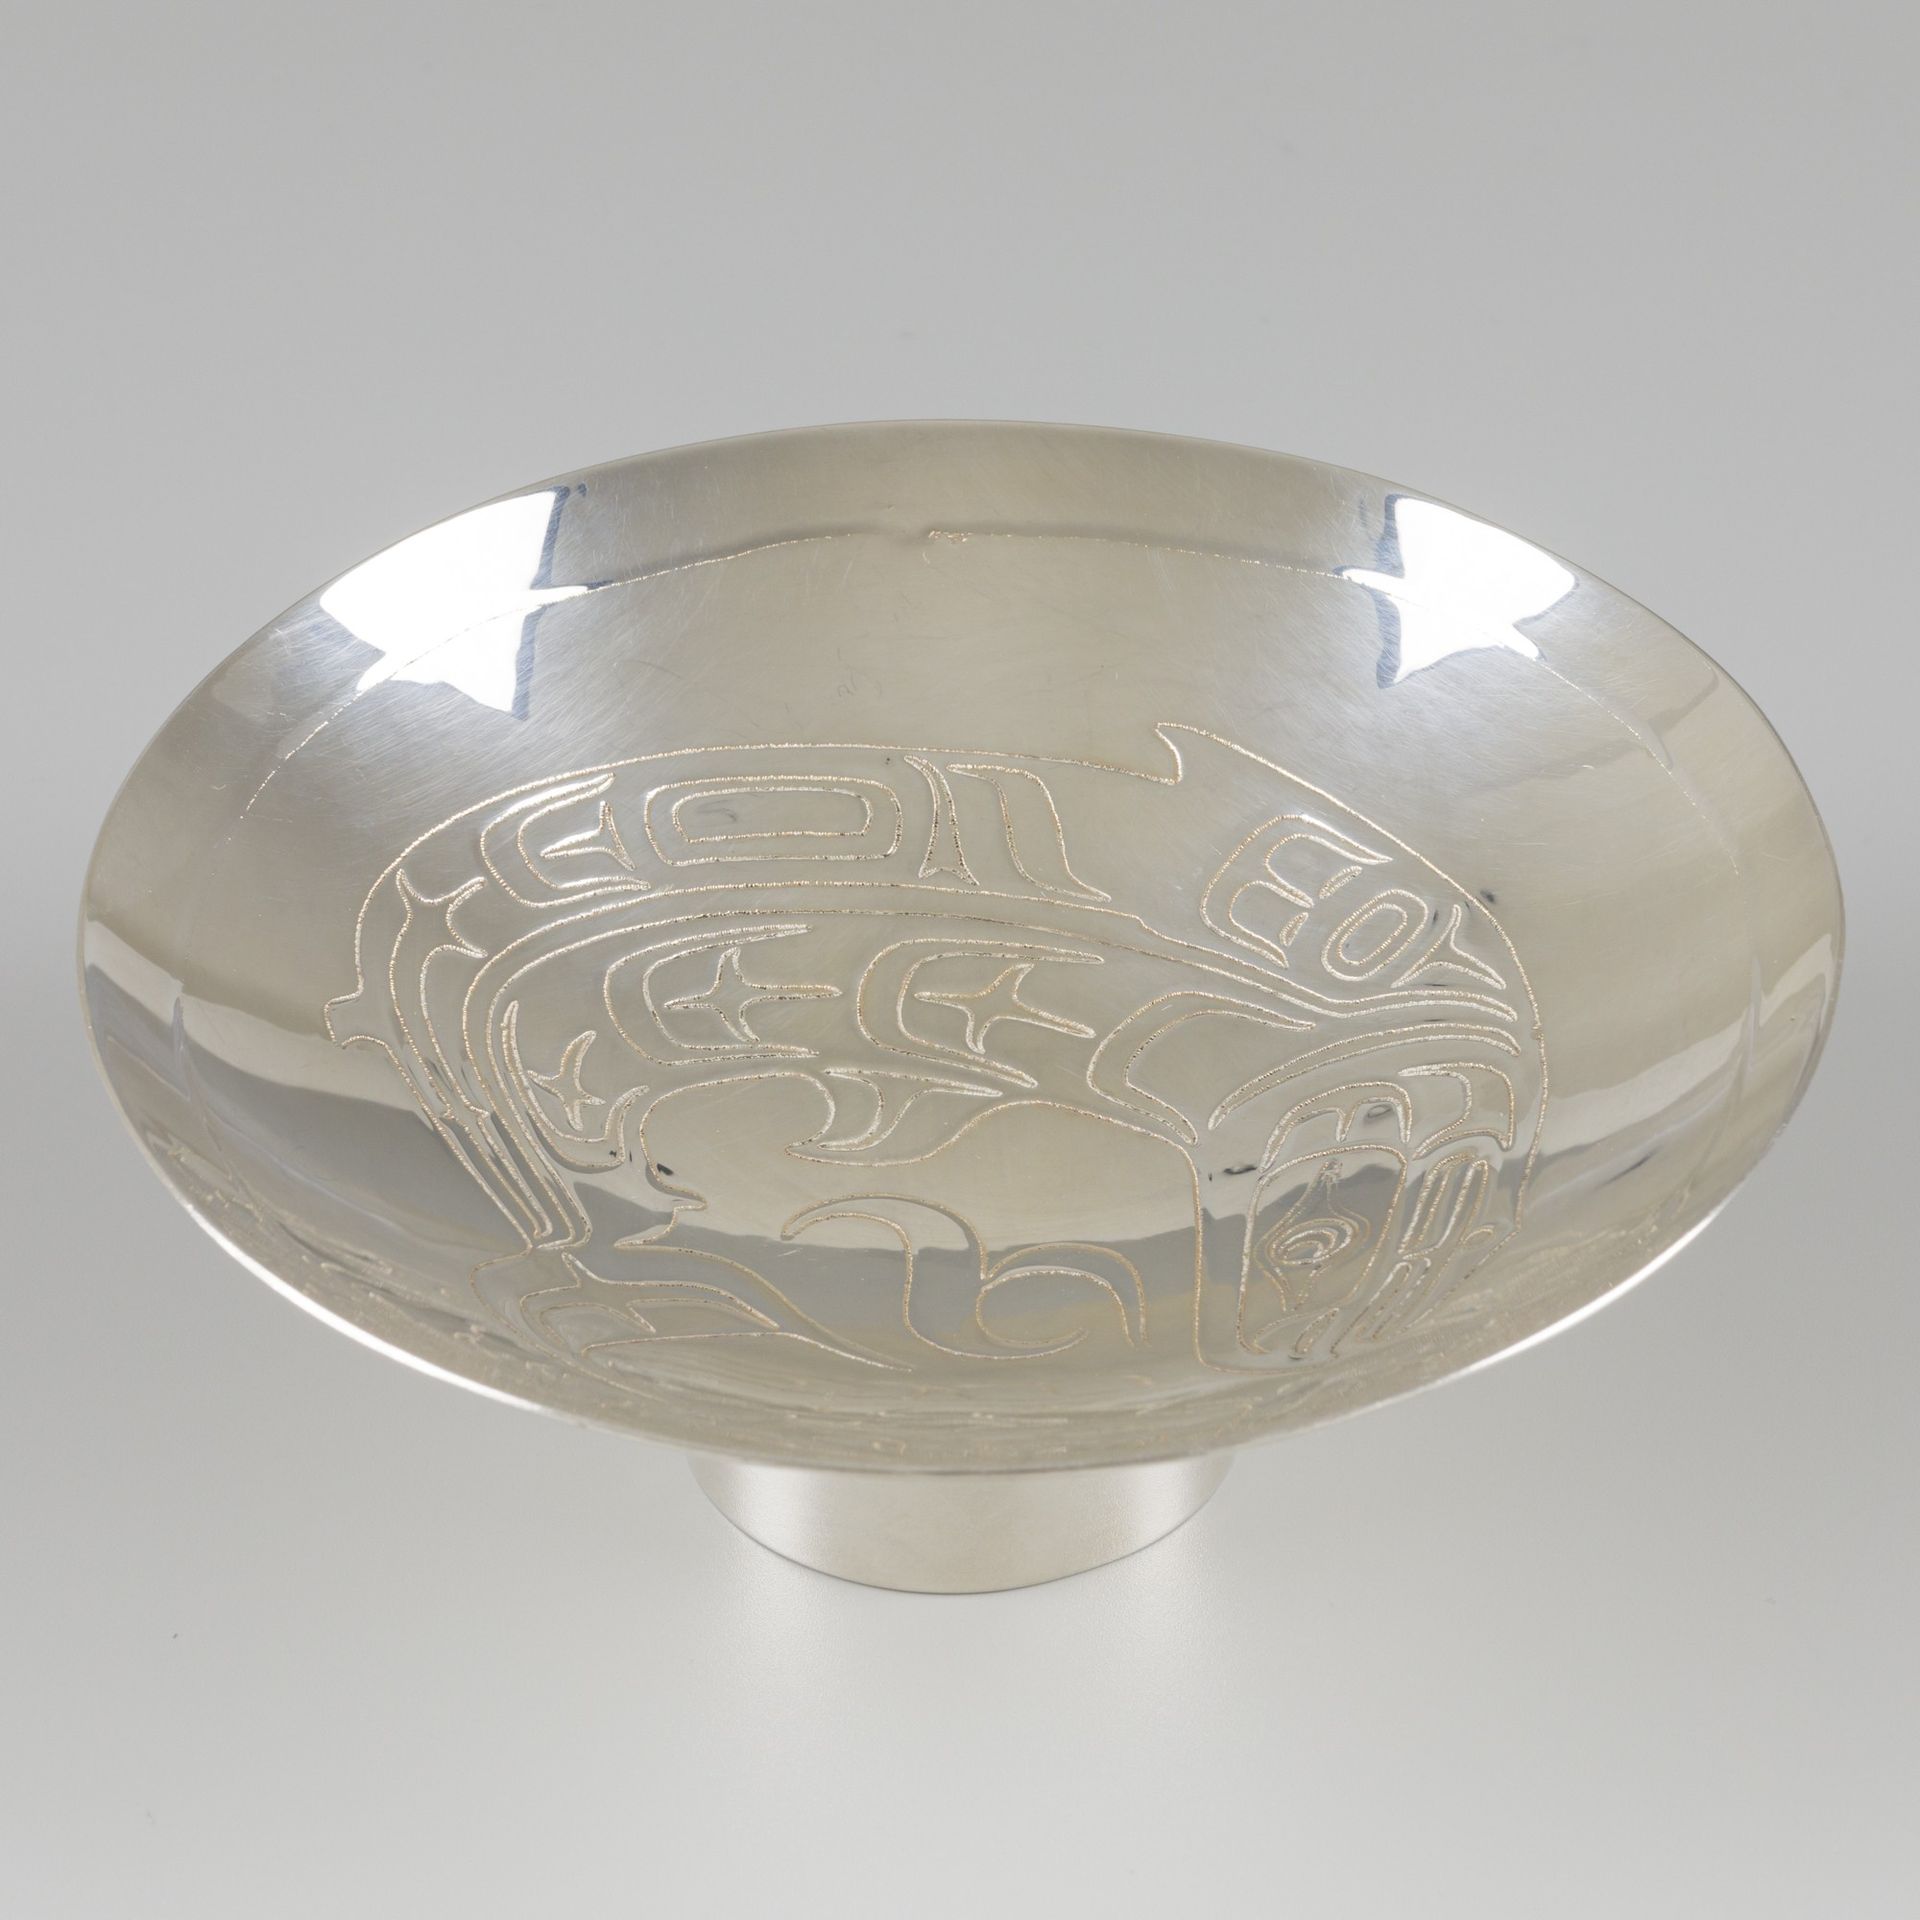 Presentation dish / bowl on a silver foot. Modelo redondo con pez de fantasía gr&hellip;